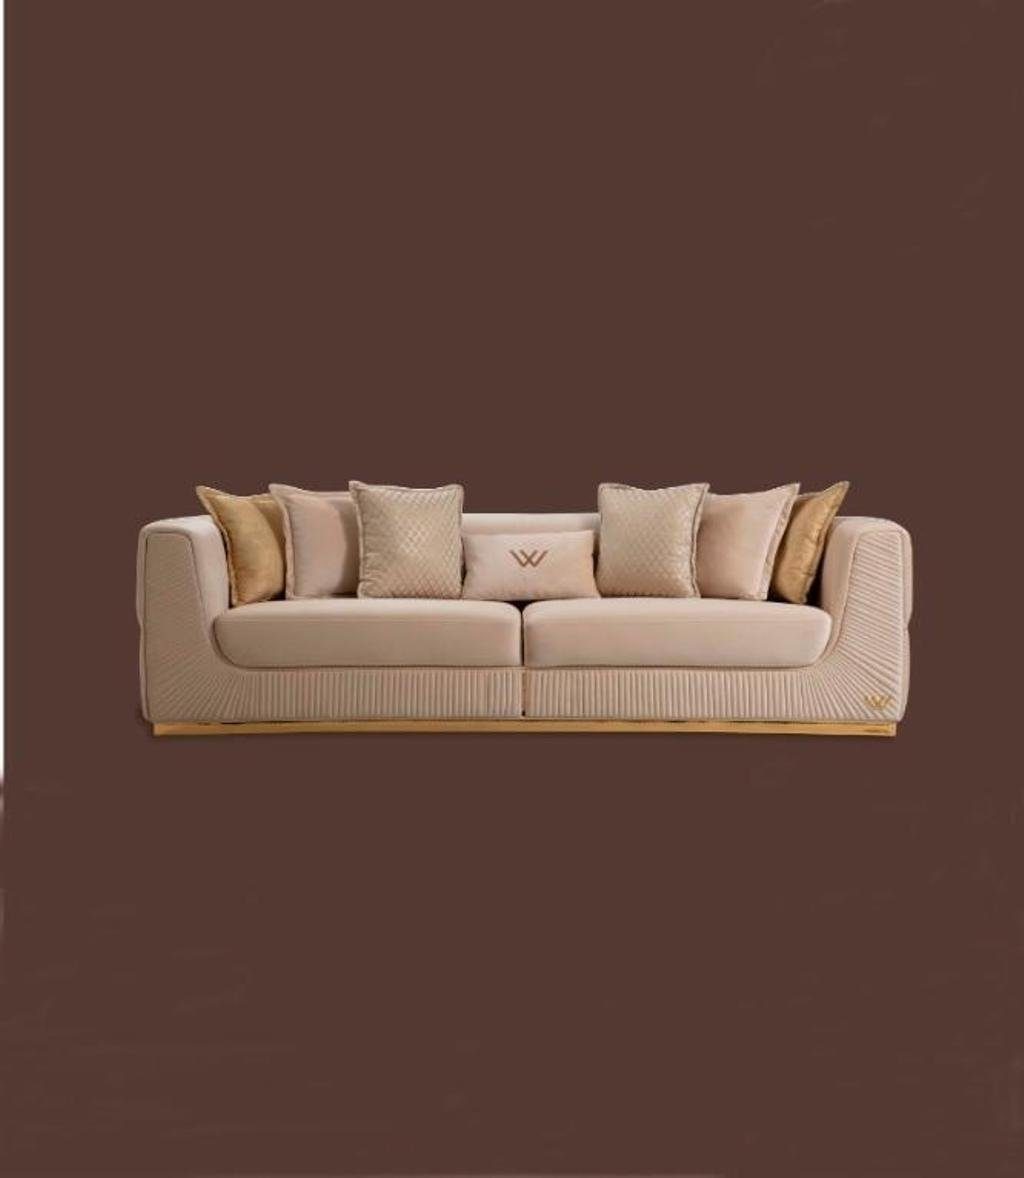 JVmoebel 4-Sitzer Sofa 4 Couchen Sofas Relax Polster Europa in 1 Leder Sitz Möbel, Teile, Made Design Sitzer